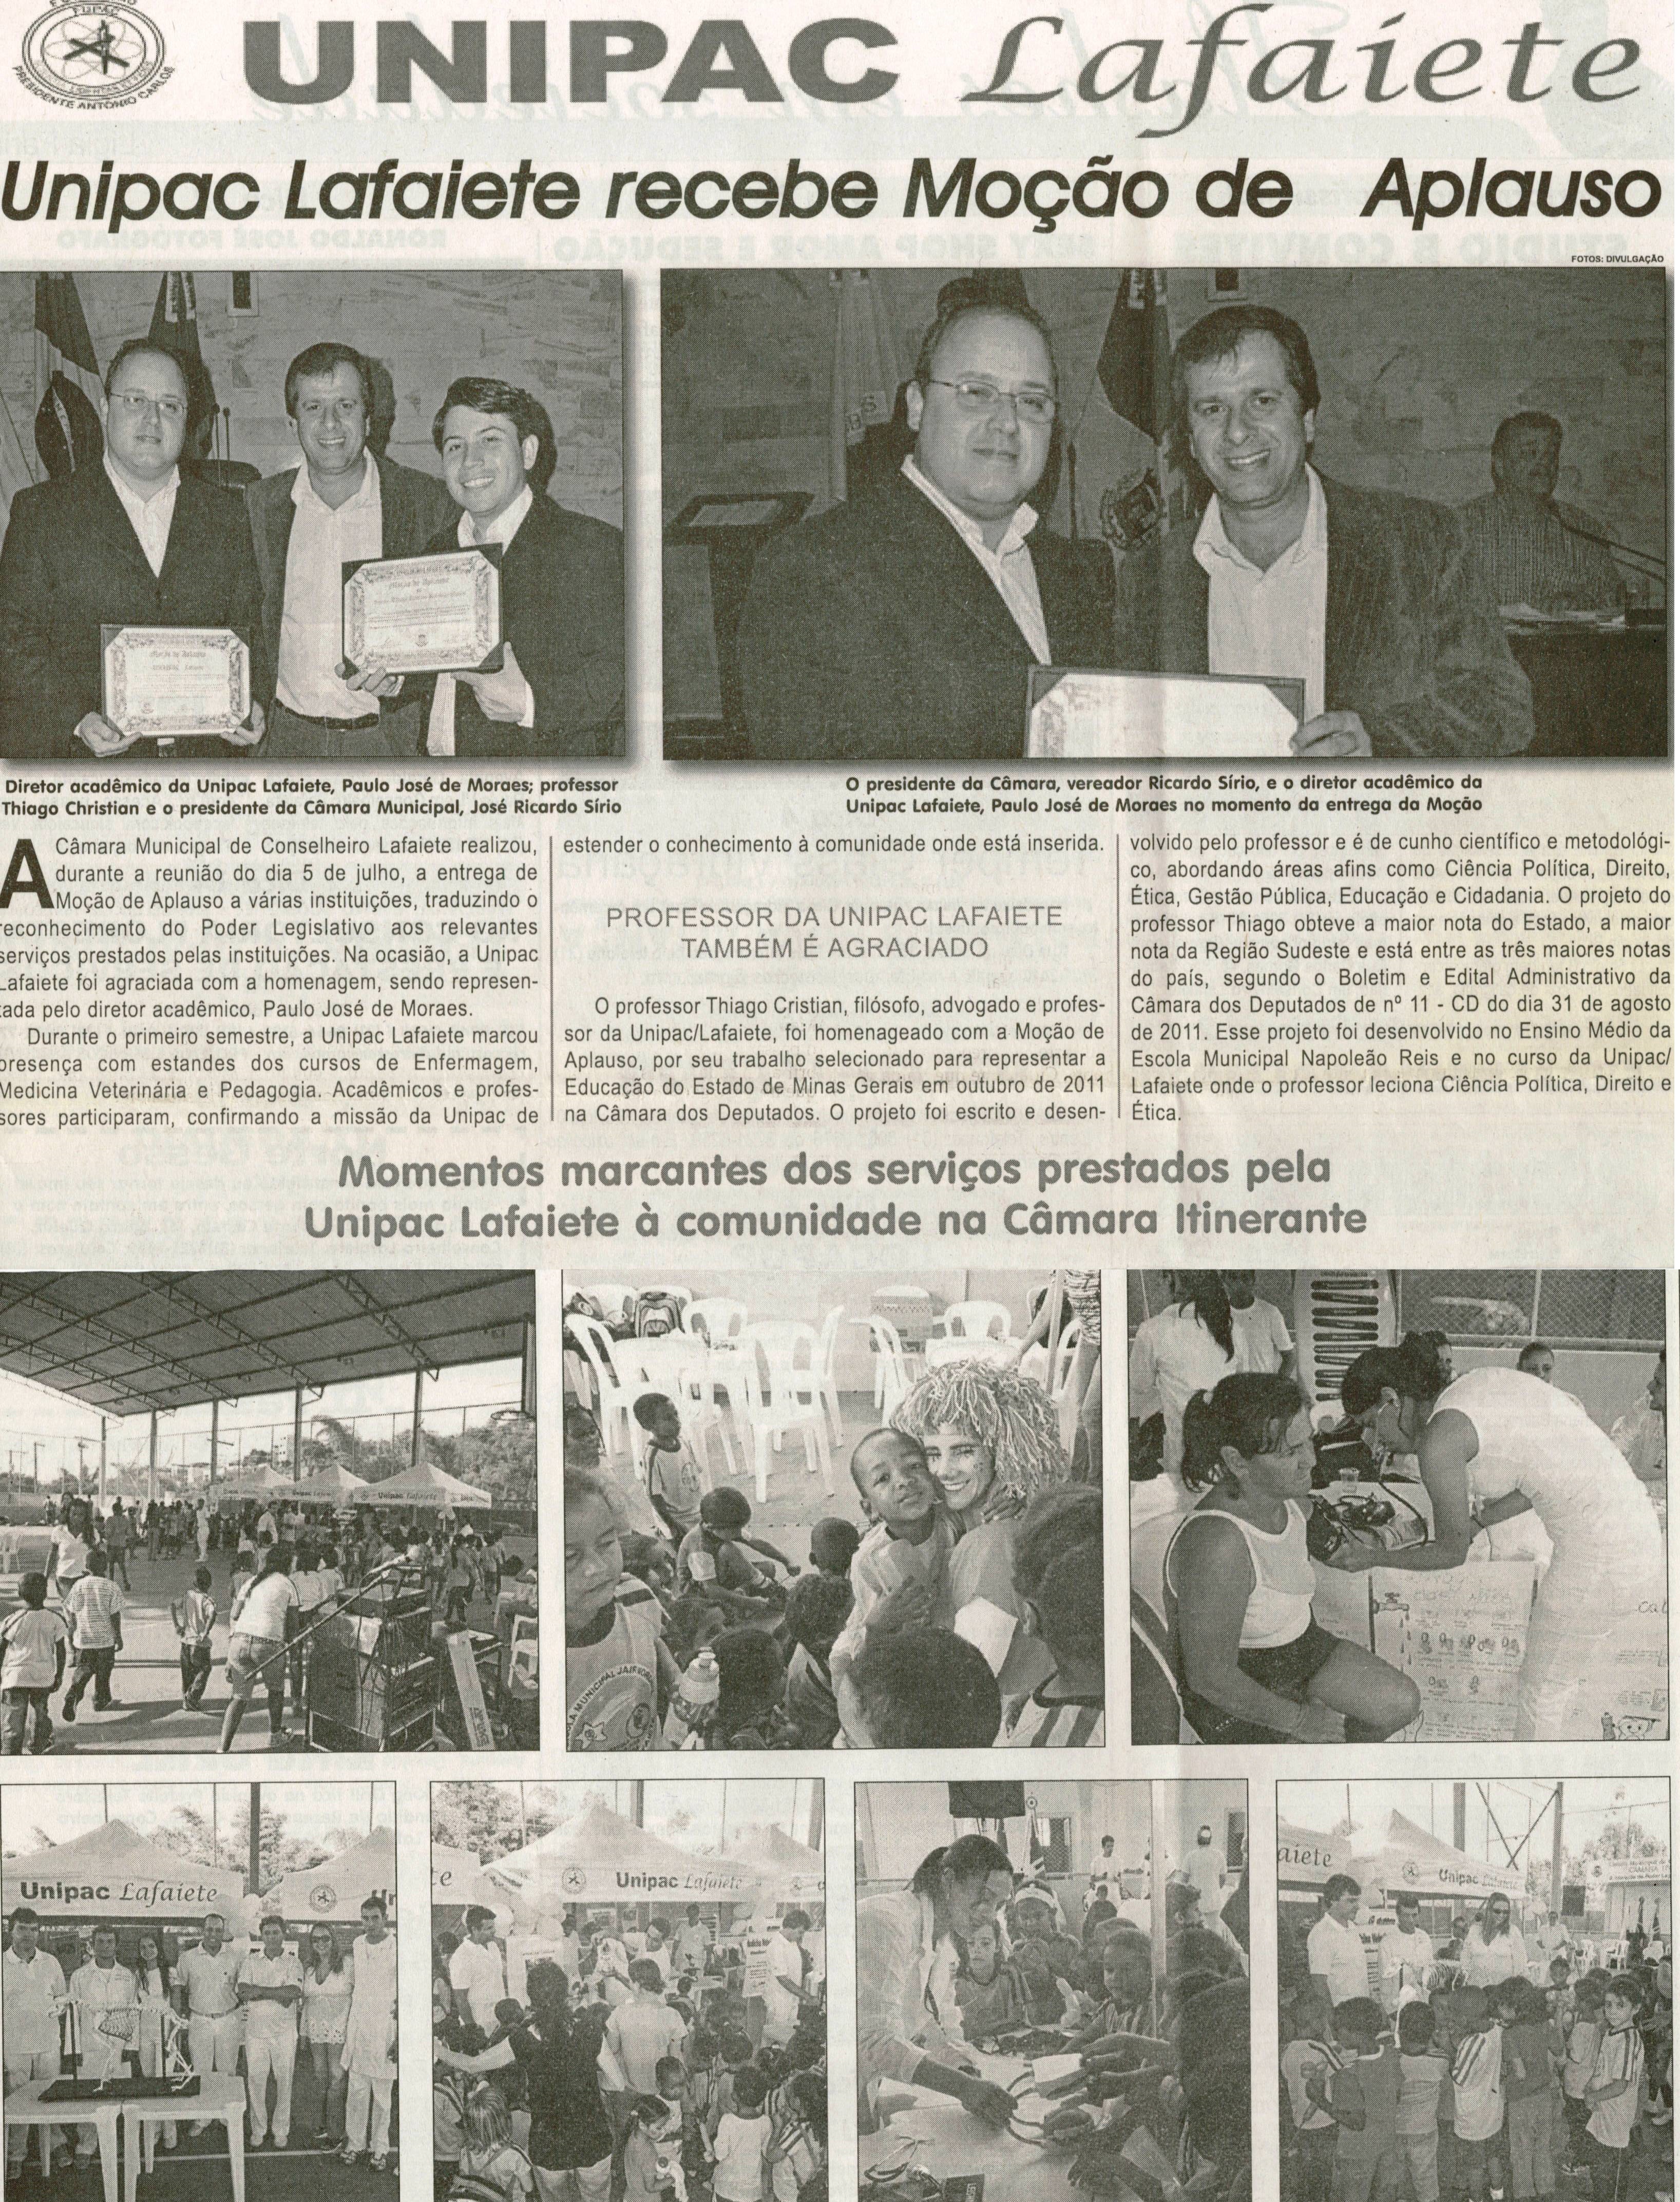 Unipac Lafaiete recebe Moção de Aplauso. Jornal Correio da Cidade, Conselheiro Lafaiete, 14 jul. 2012, p. 11.